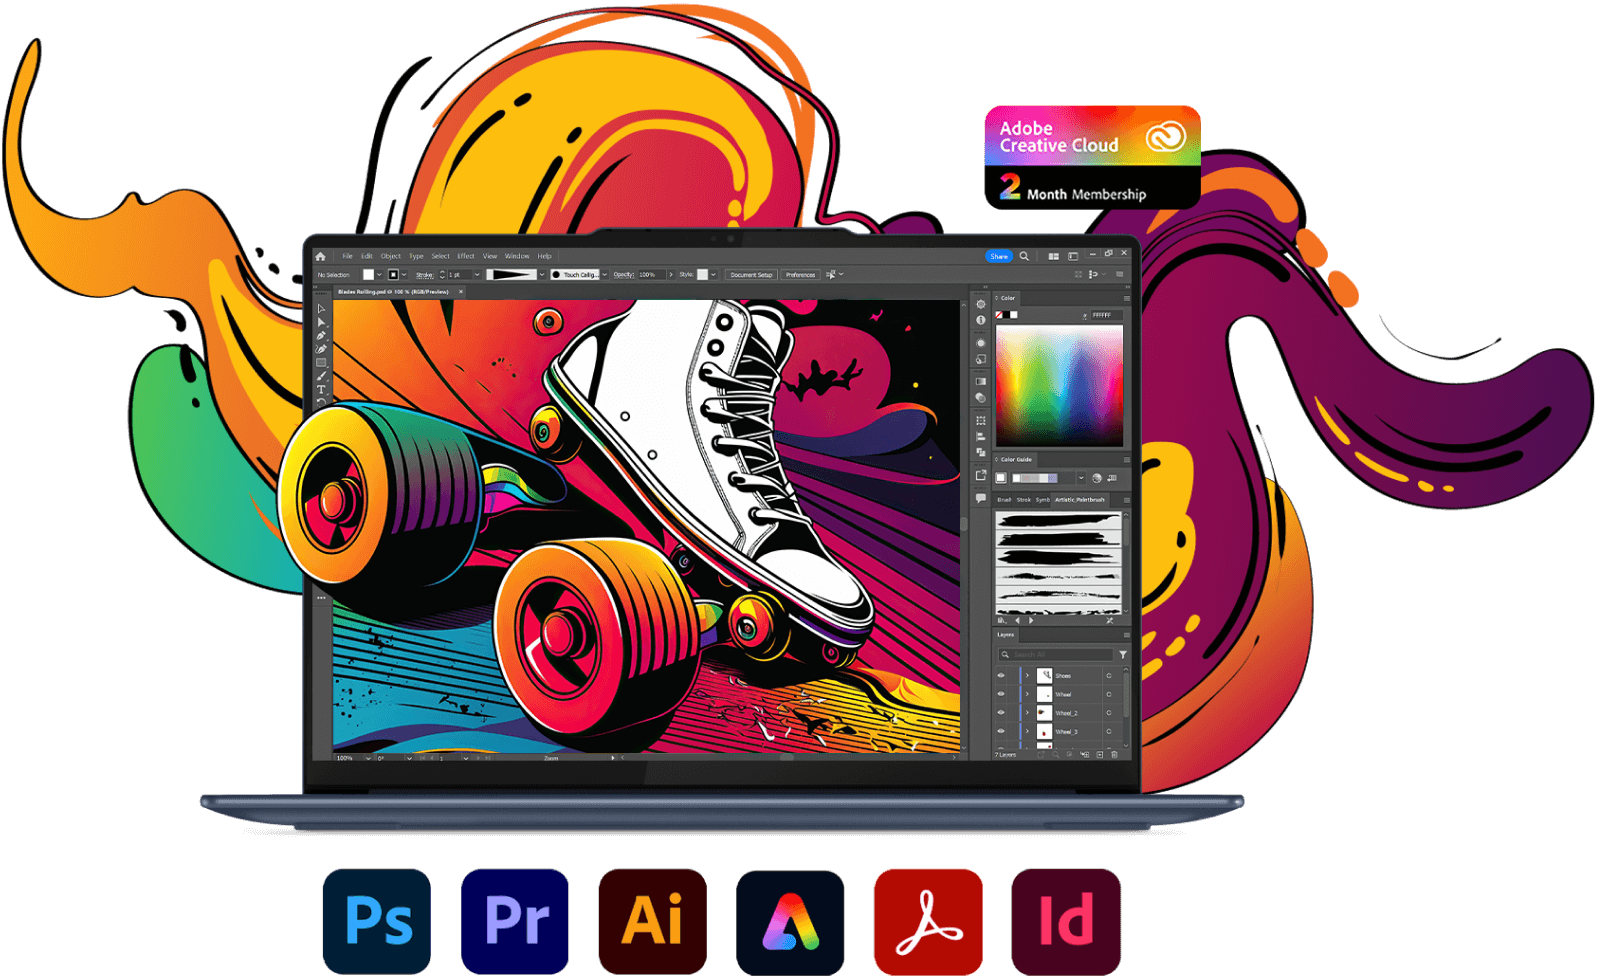 Ноутбук Lenovo Yoga, вид спереди с отображением на экране окна Photoshop и различных значков приложений Adobe Creative Cloud.